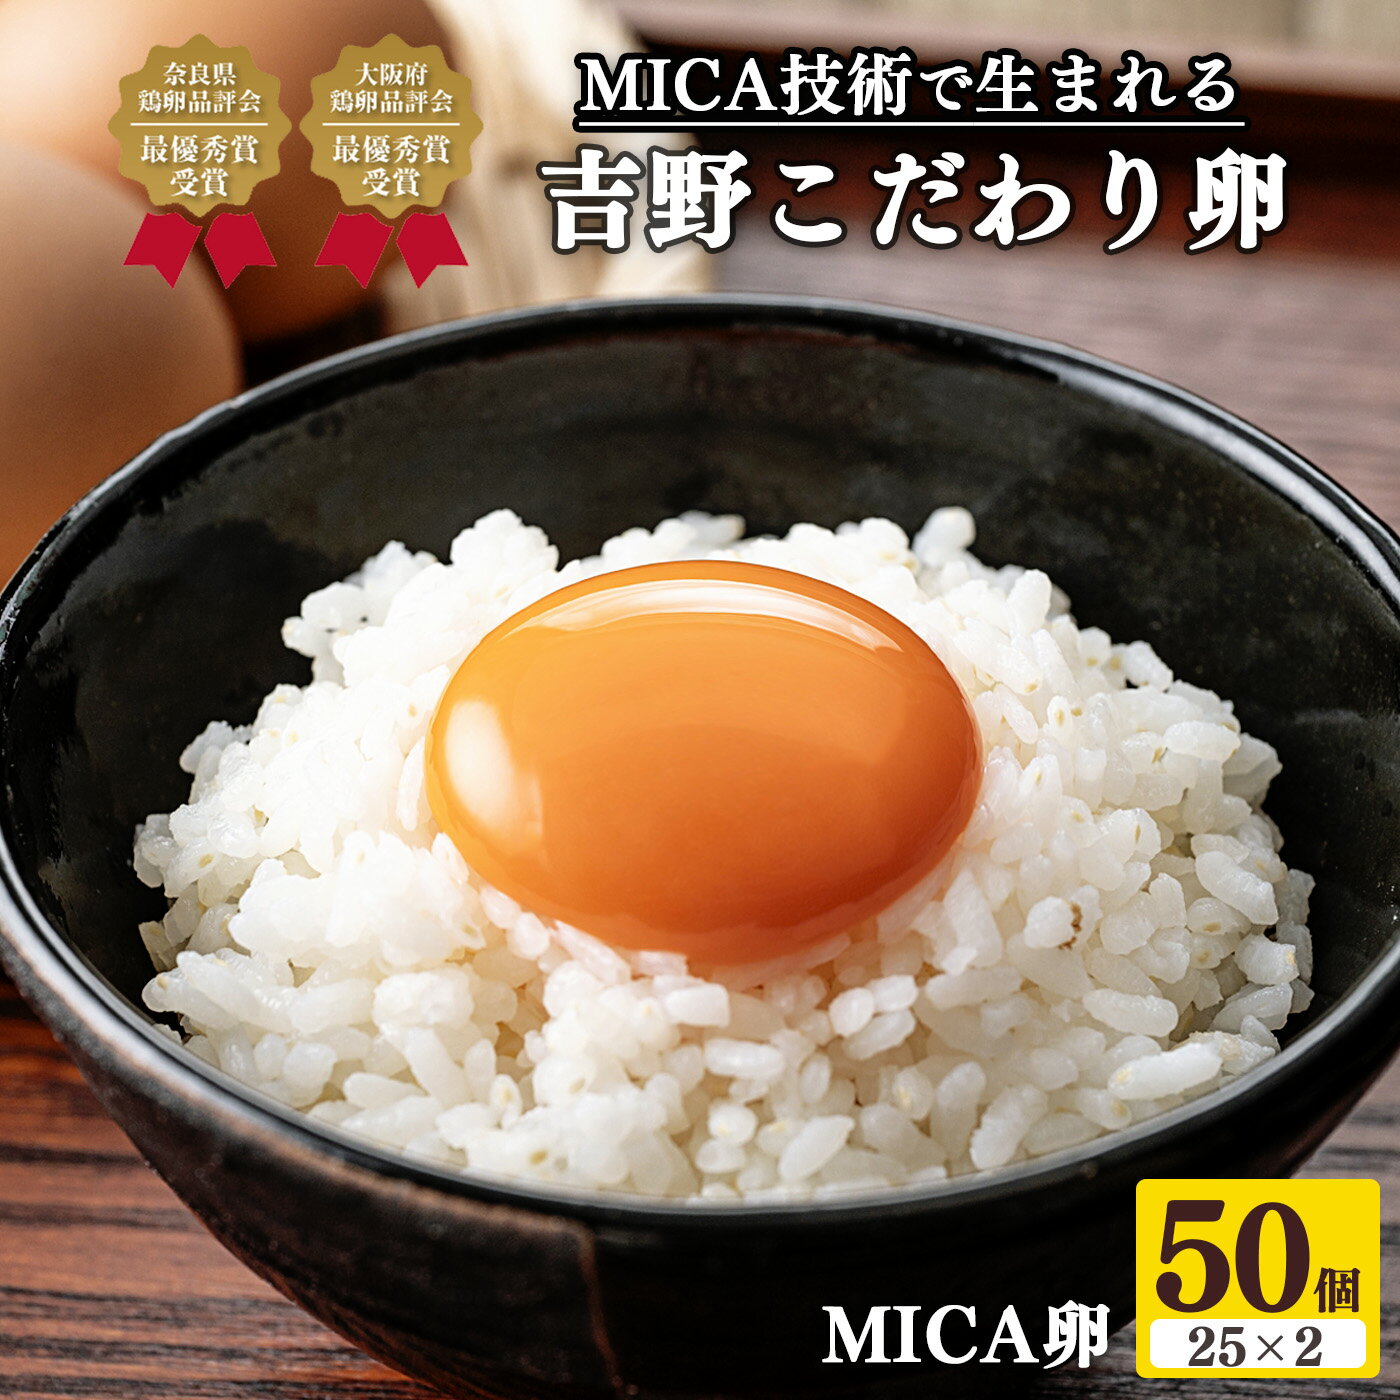 吉野こだわり卵 MICA卵 50個 ( 25個 × 2 ) たまご 奈良県 吉野町